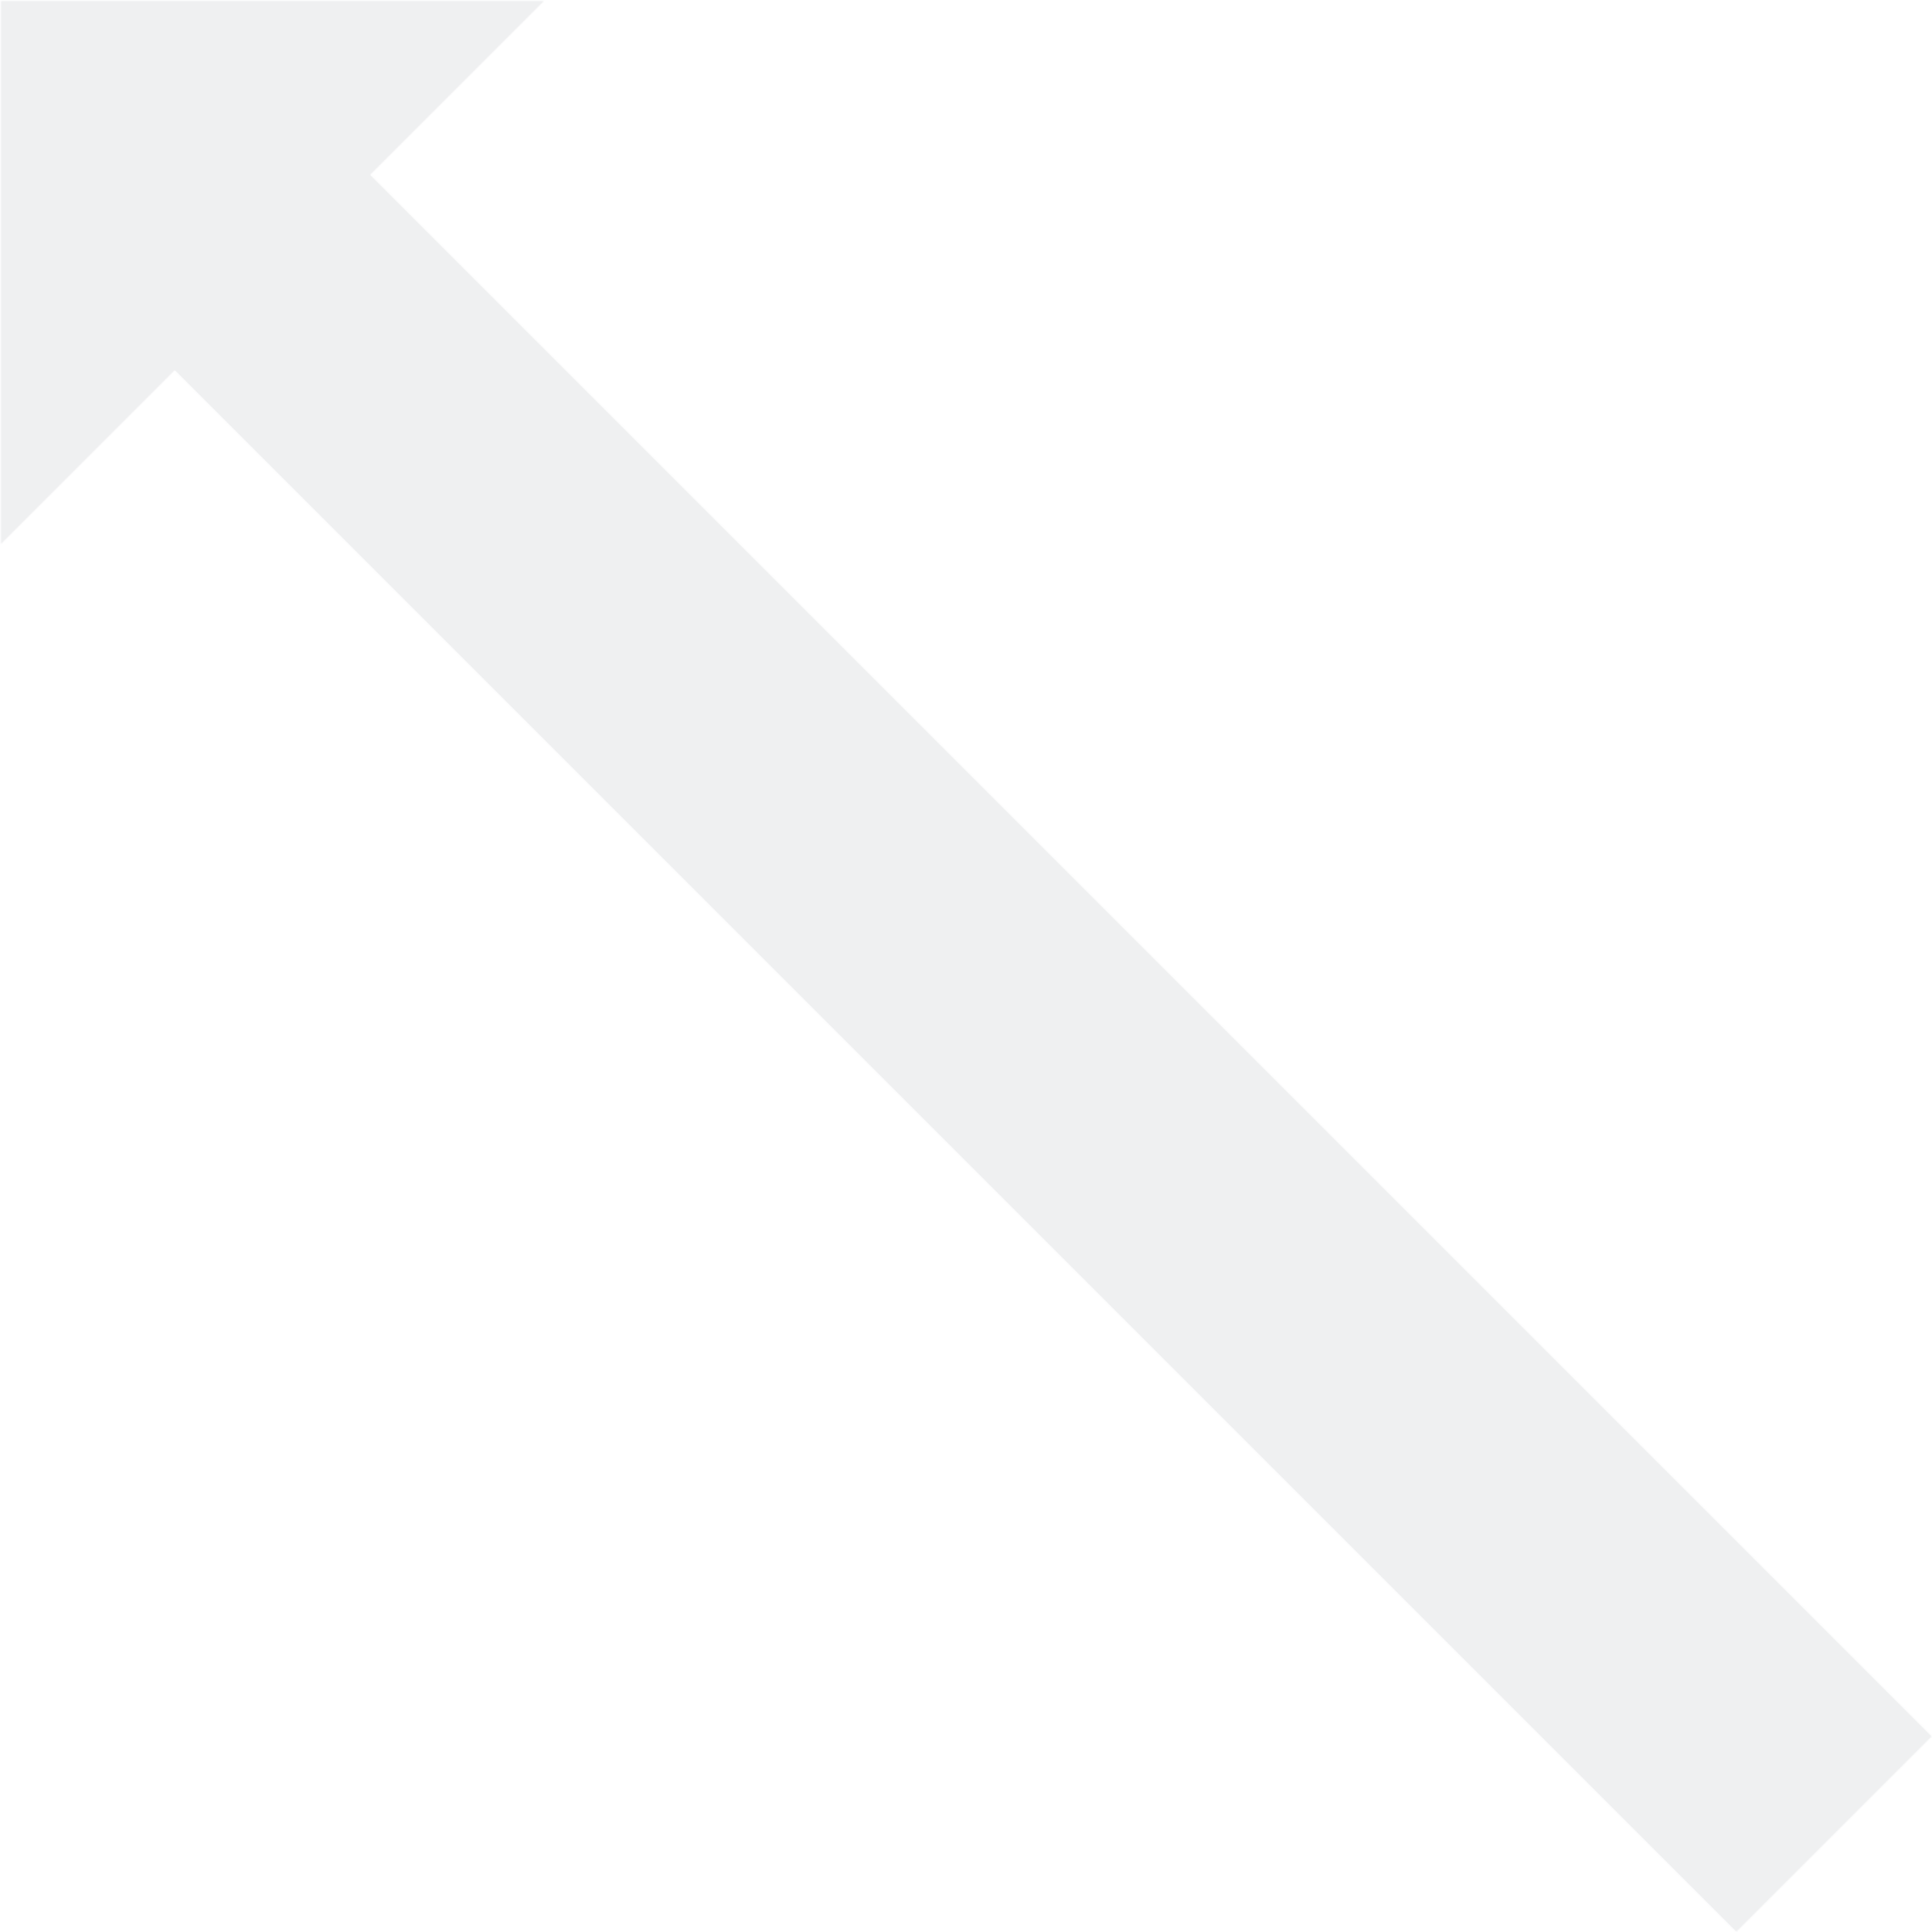 gnumeric object arrow icon